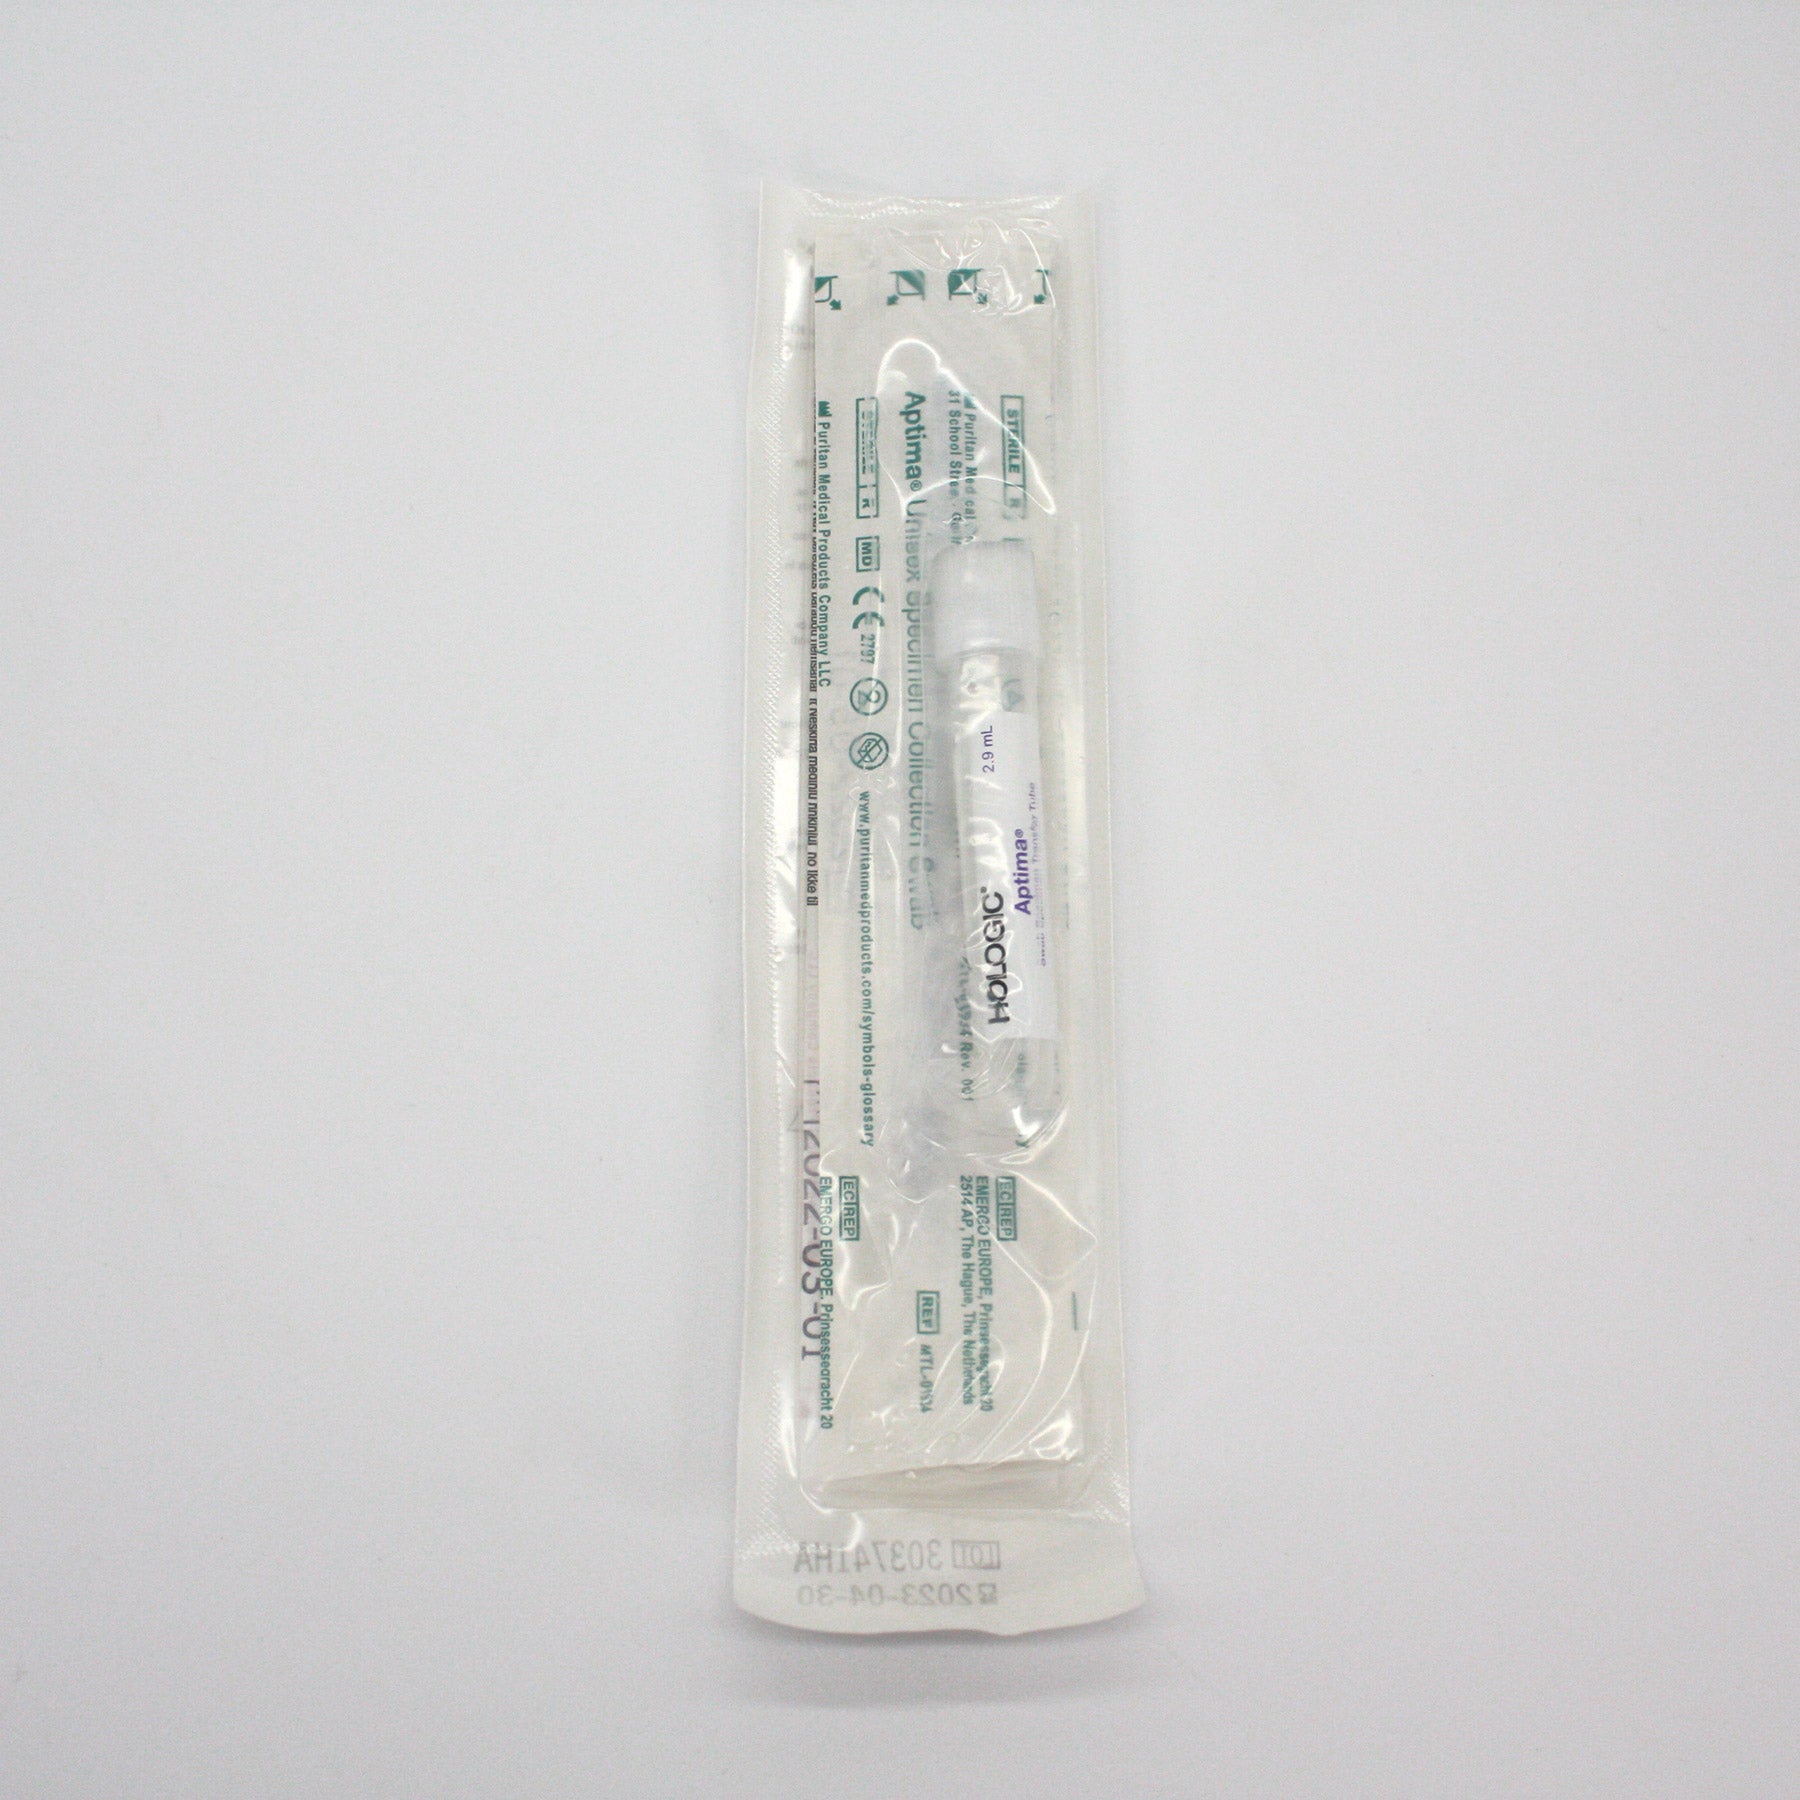 Endocervical/Urethral kits (APTIMA COMBO2 Swab Spec Collection bx ...